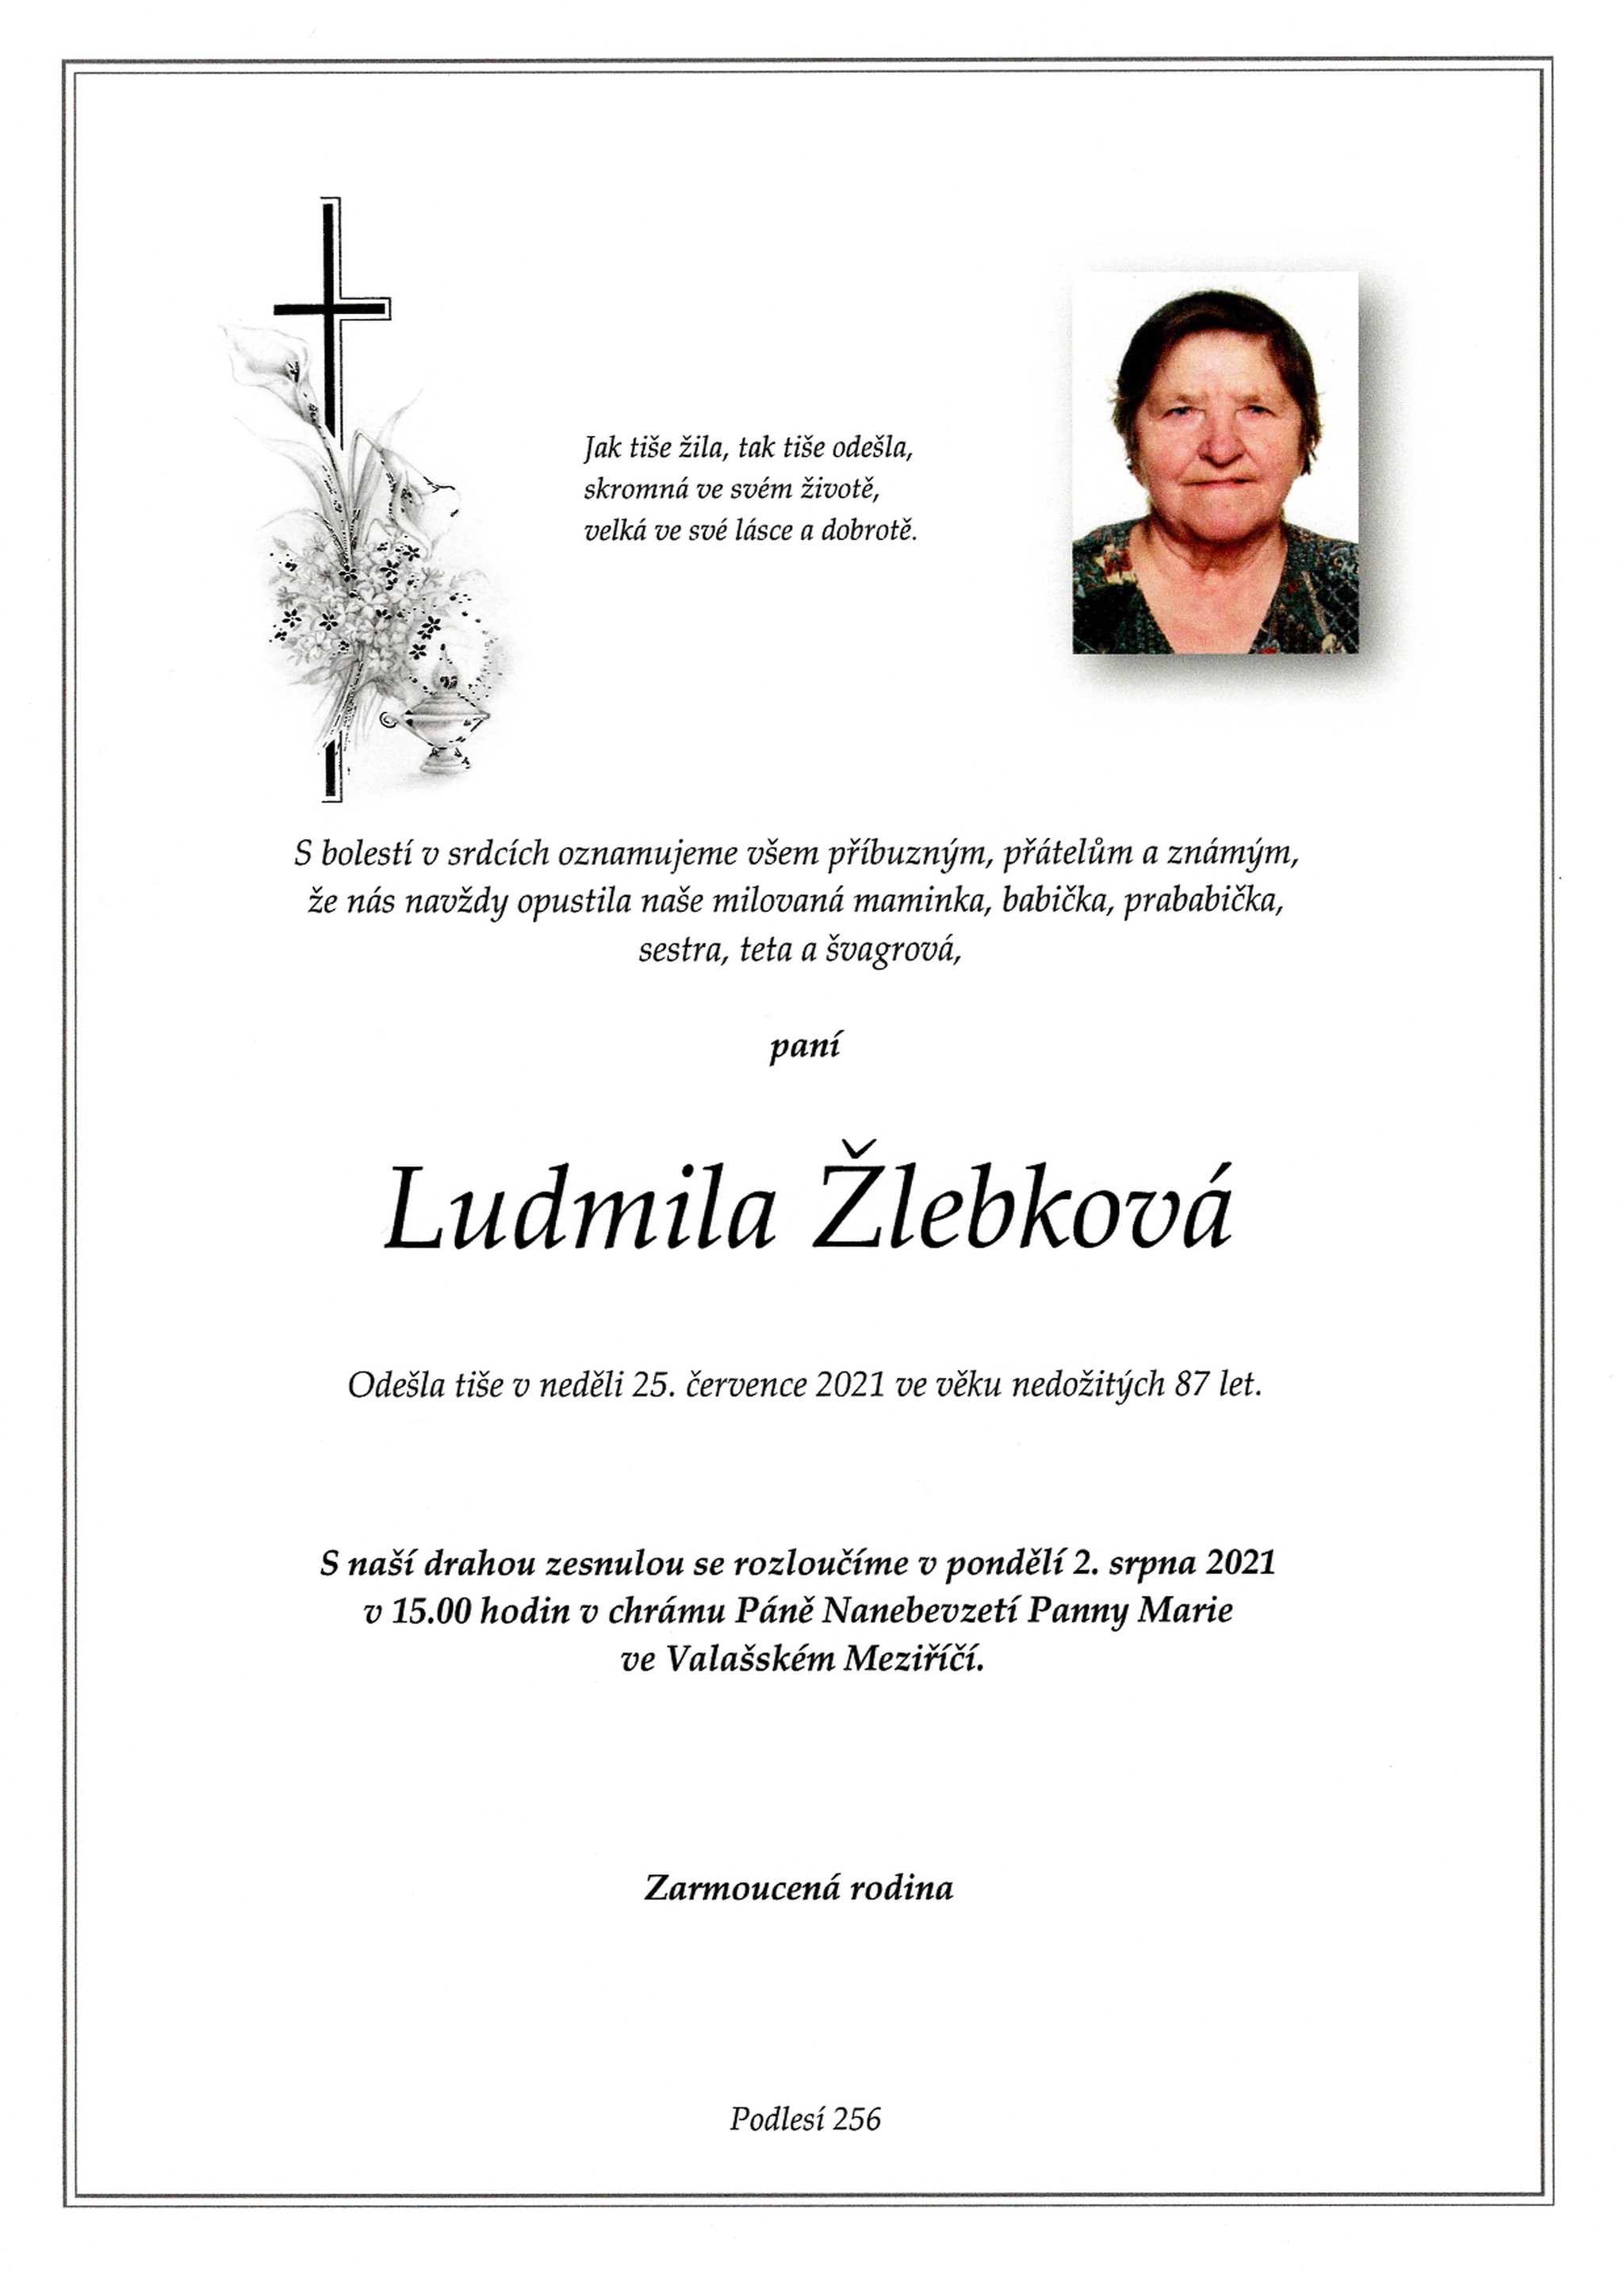 Ludmila Žlebková